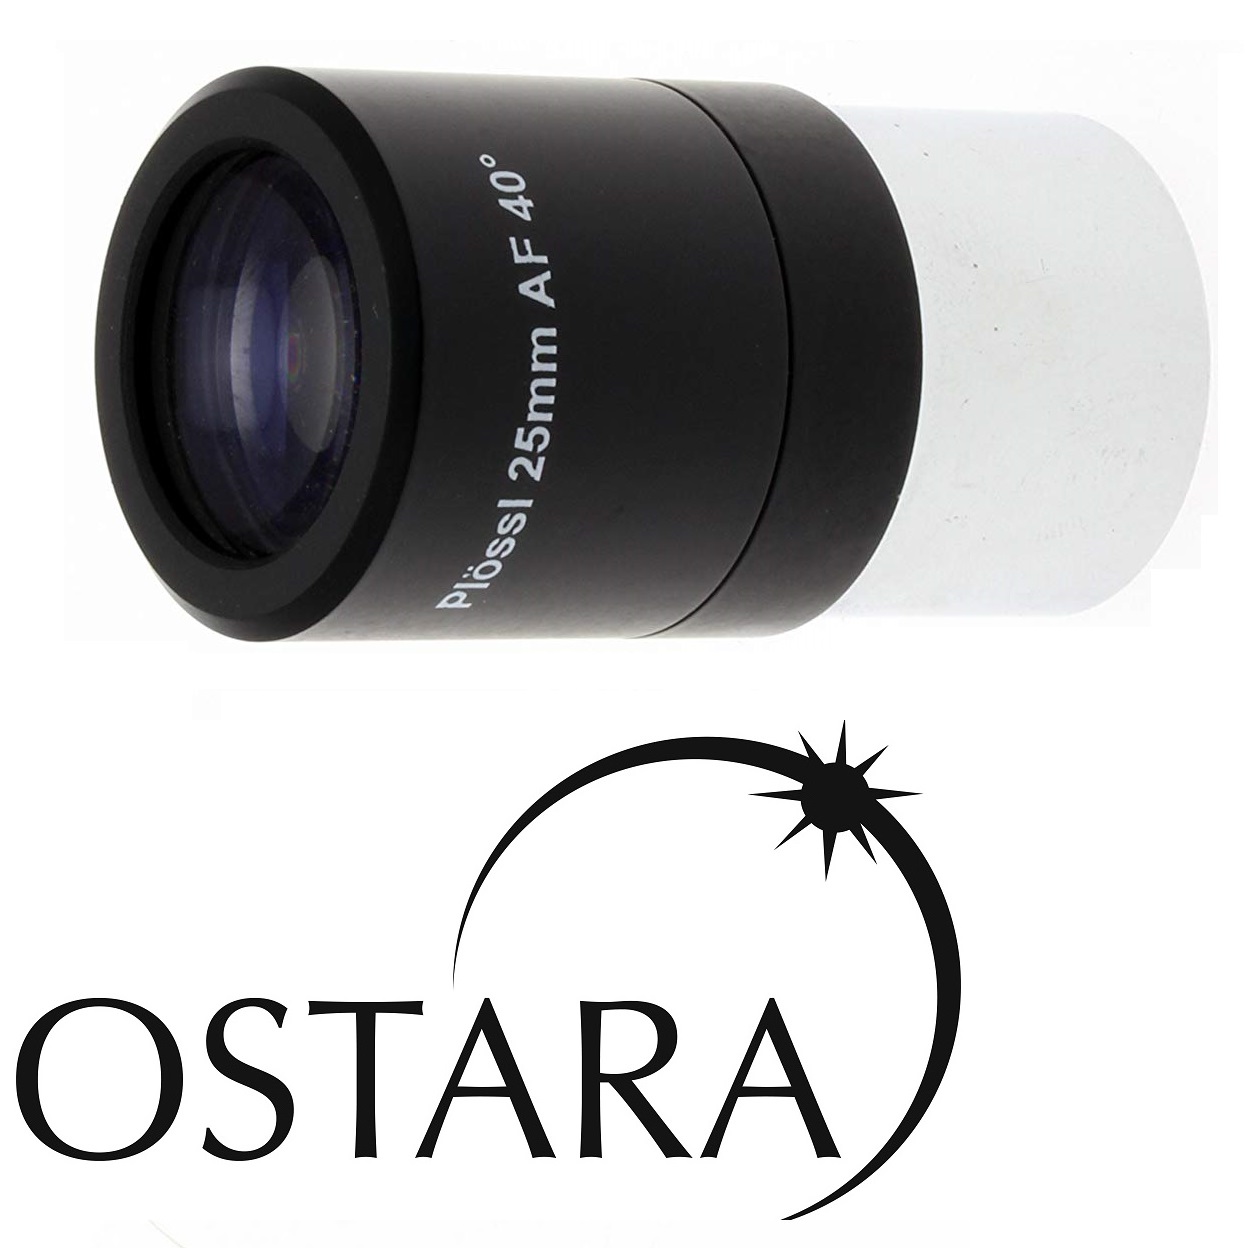 OSTARA HR PLOSSL 25mm EYEPIECE 1.25" BARREL FOR ASTRONOMICAL TELESCOPE 